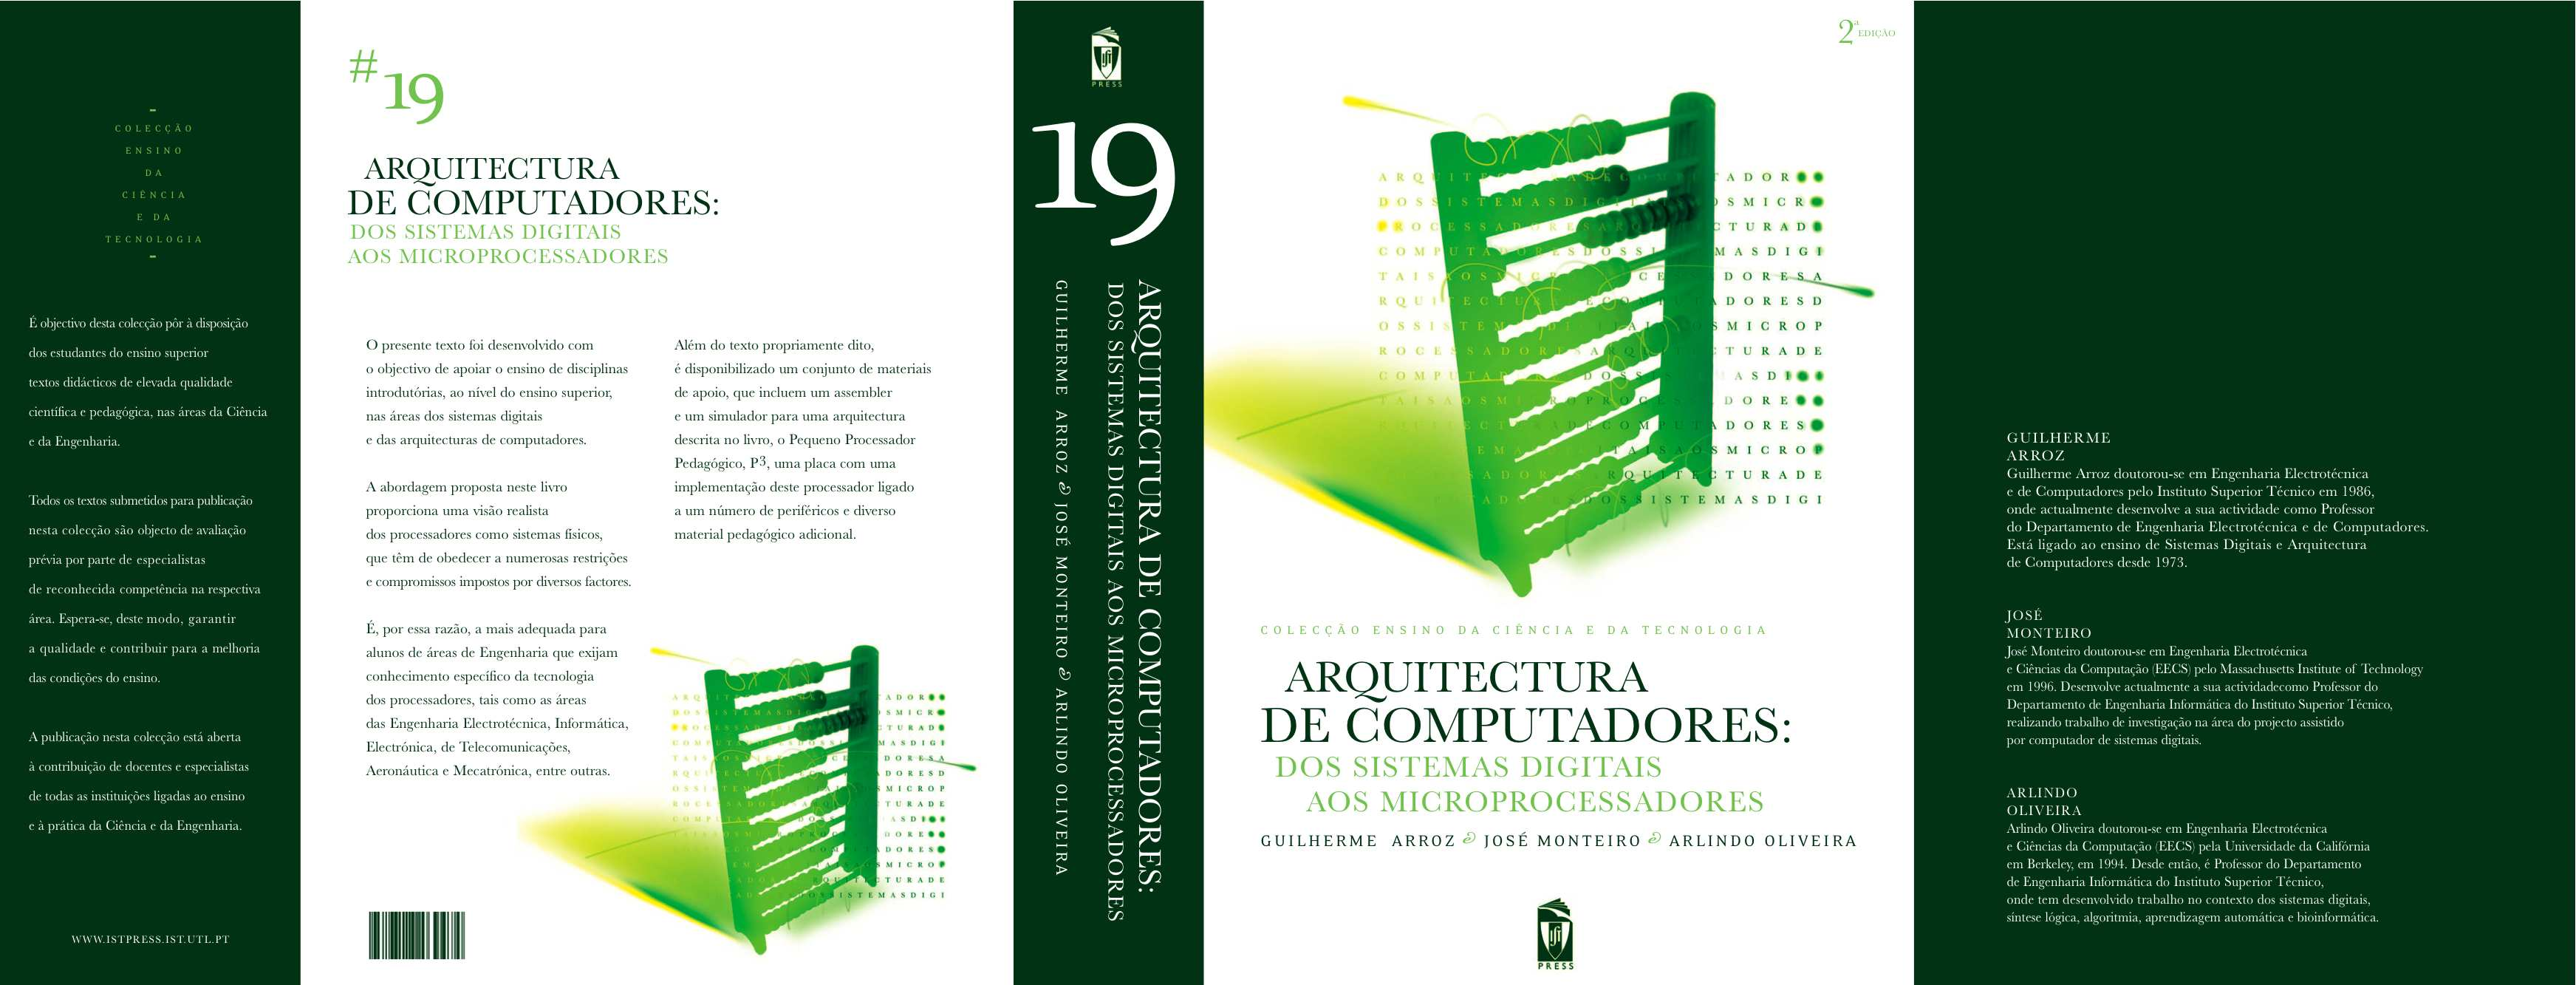 Bibliografia Bibliografia principal: Arquitectura de Computadores: dos sistemas digitais aos microprocessadores Guilherme Arroz, José Monteiro, Arlindo Oliveira IST Press, 2009 Prof.